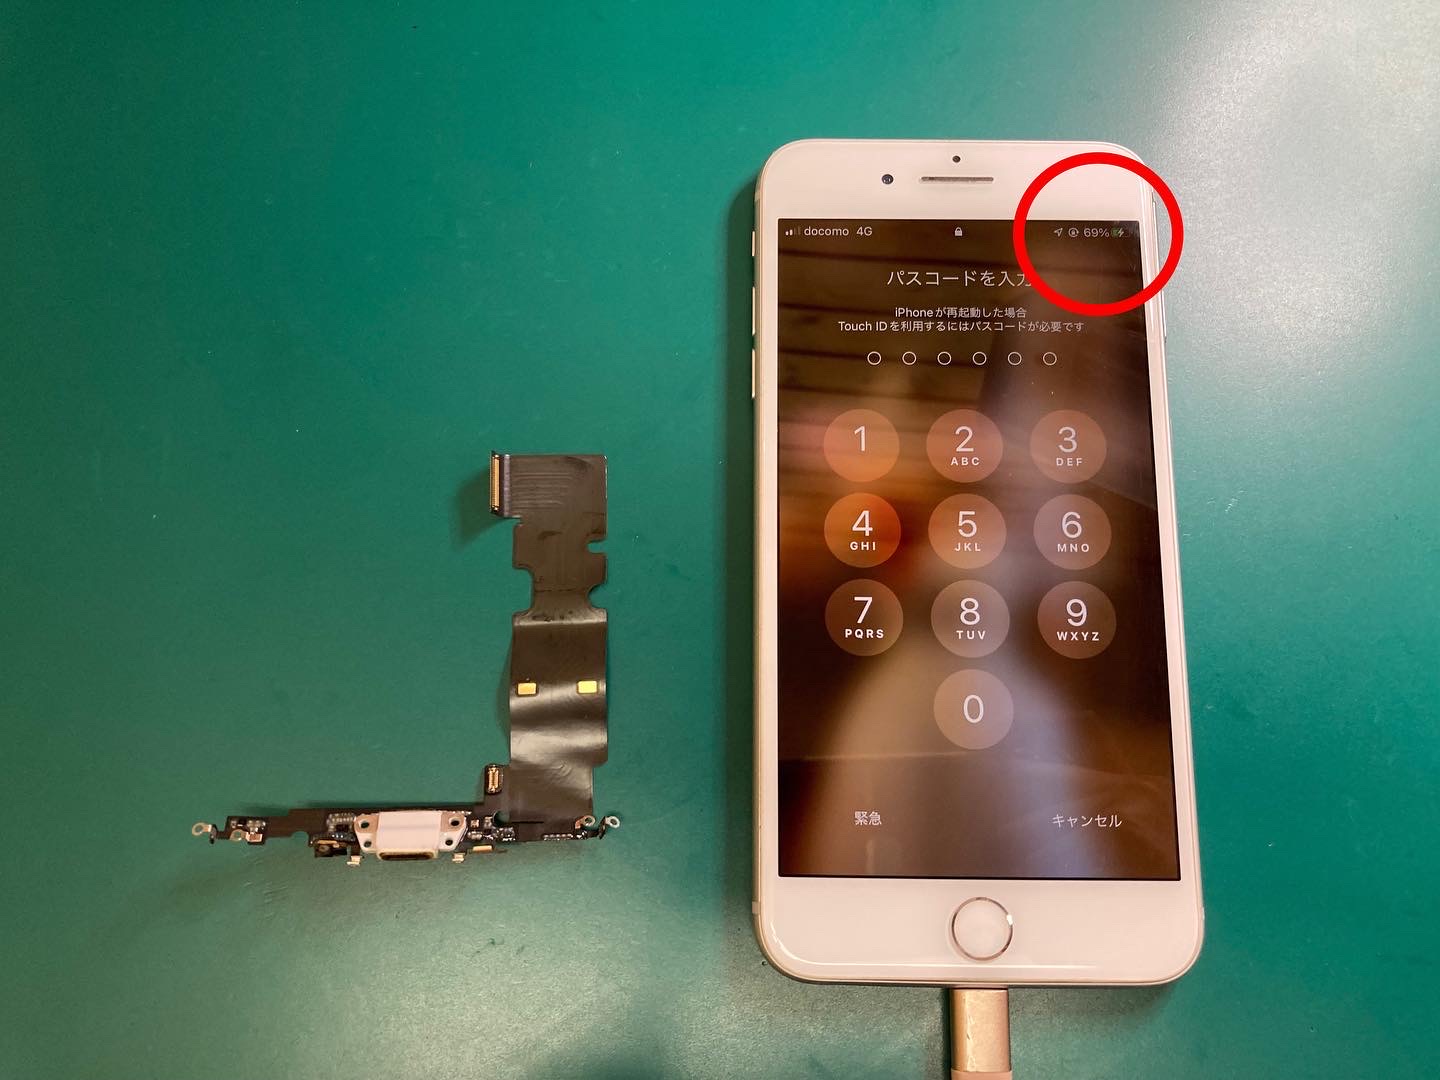 充電ケーブルを差し込んでも充電できない症状iPhone充電コネクター交換作業時間90分〜即日修理いたします。